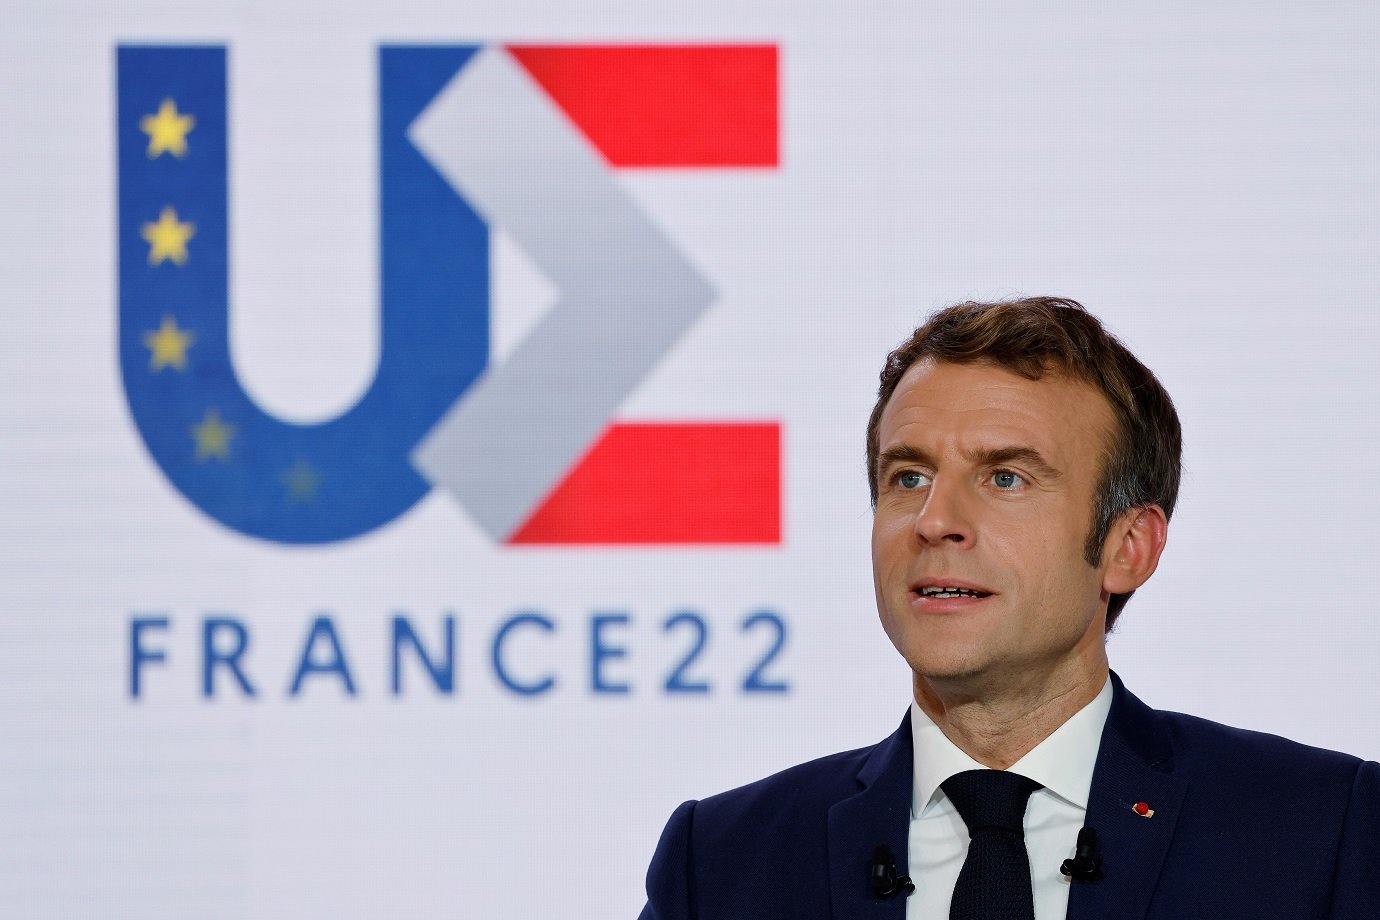 O presidente francês, Emmanuel Macron, durante coletiva de imprensa na posse da França na presidência da União Europeia em Paris, França